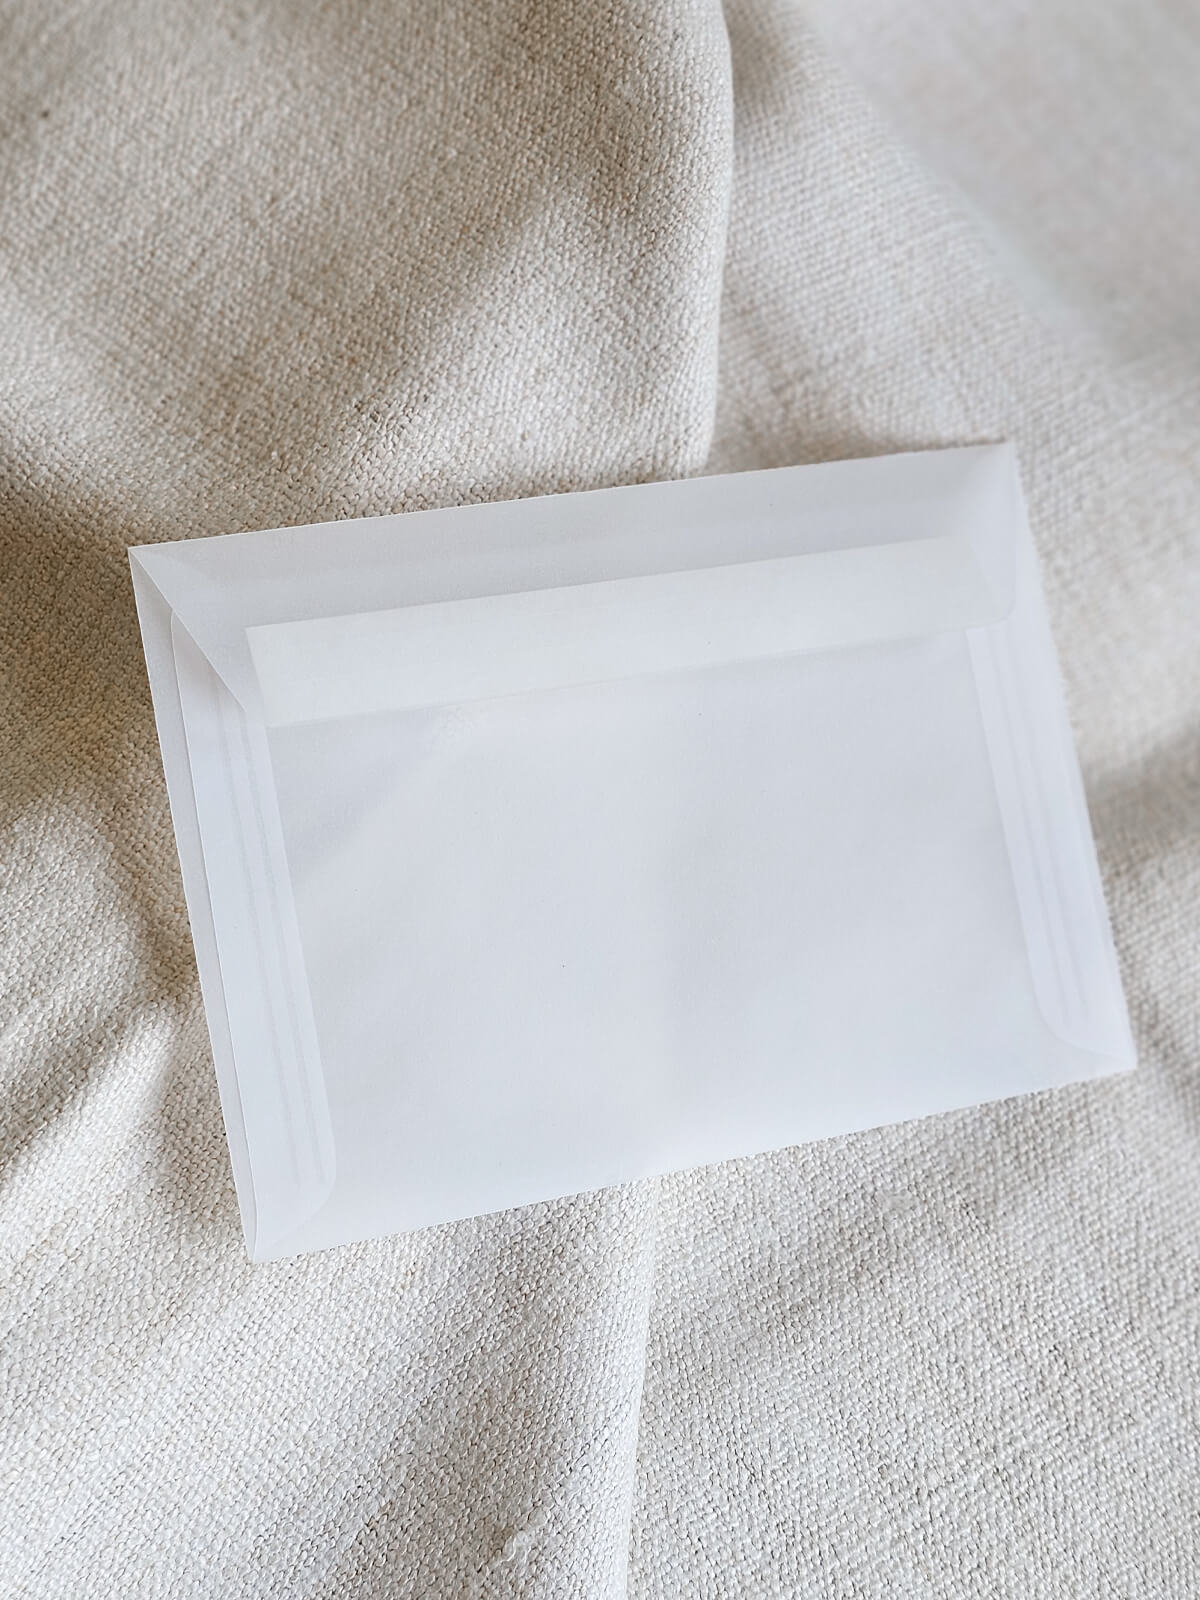 Jednostavna bijela kuverta na tkanini bež boje, idealna za elegantne pozivnice za vjenčanje